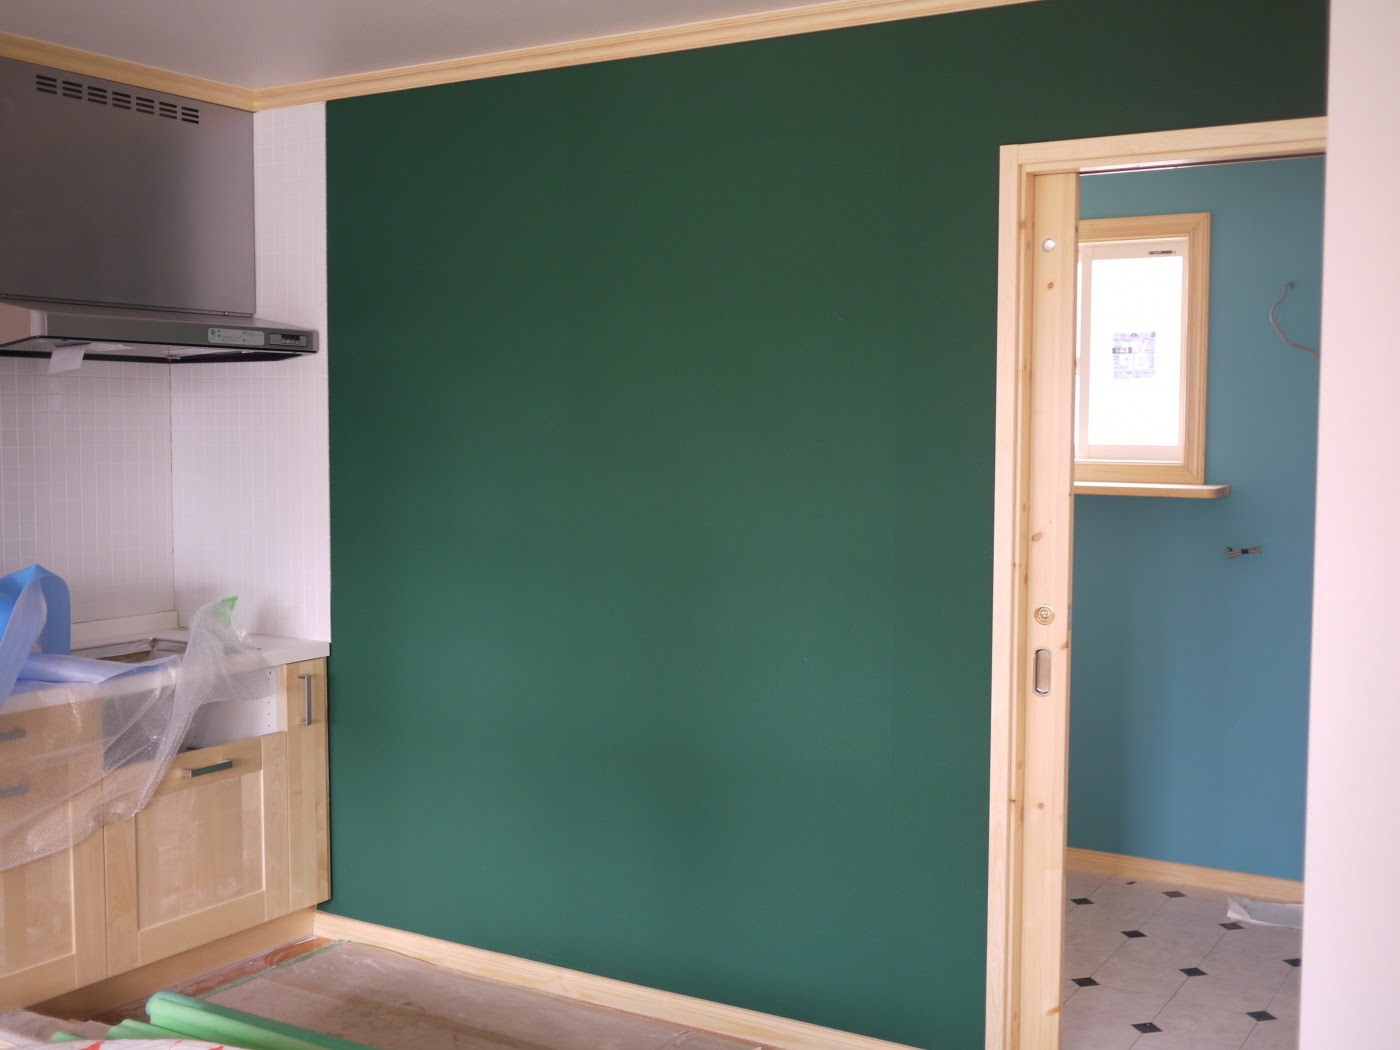 寝室 緑 壁紙 Interior